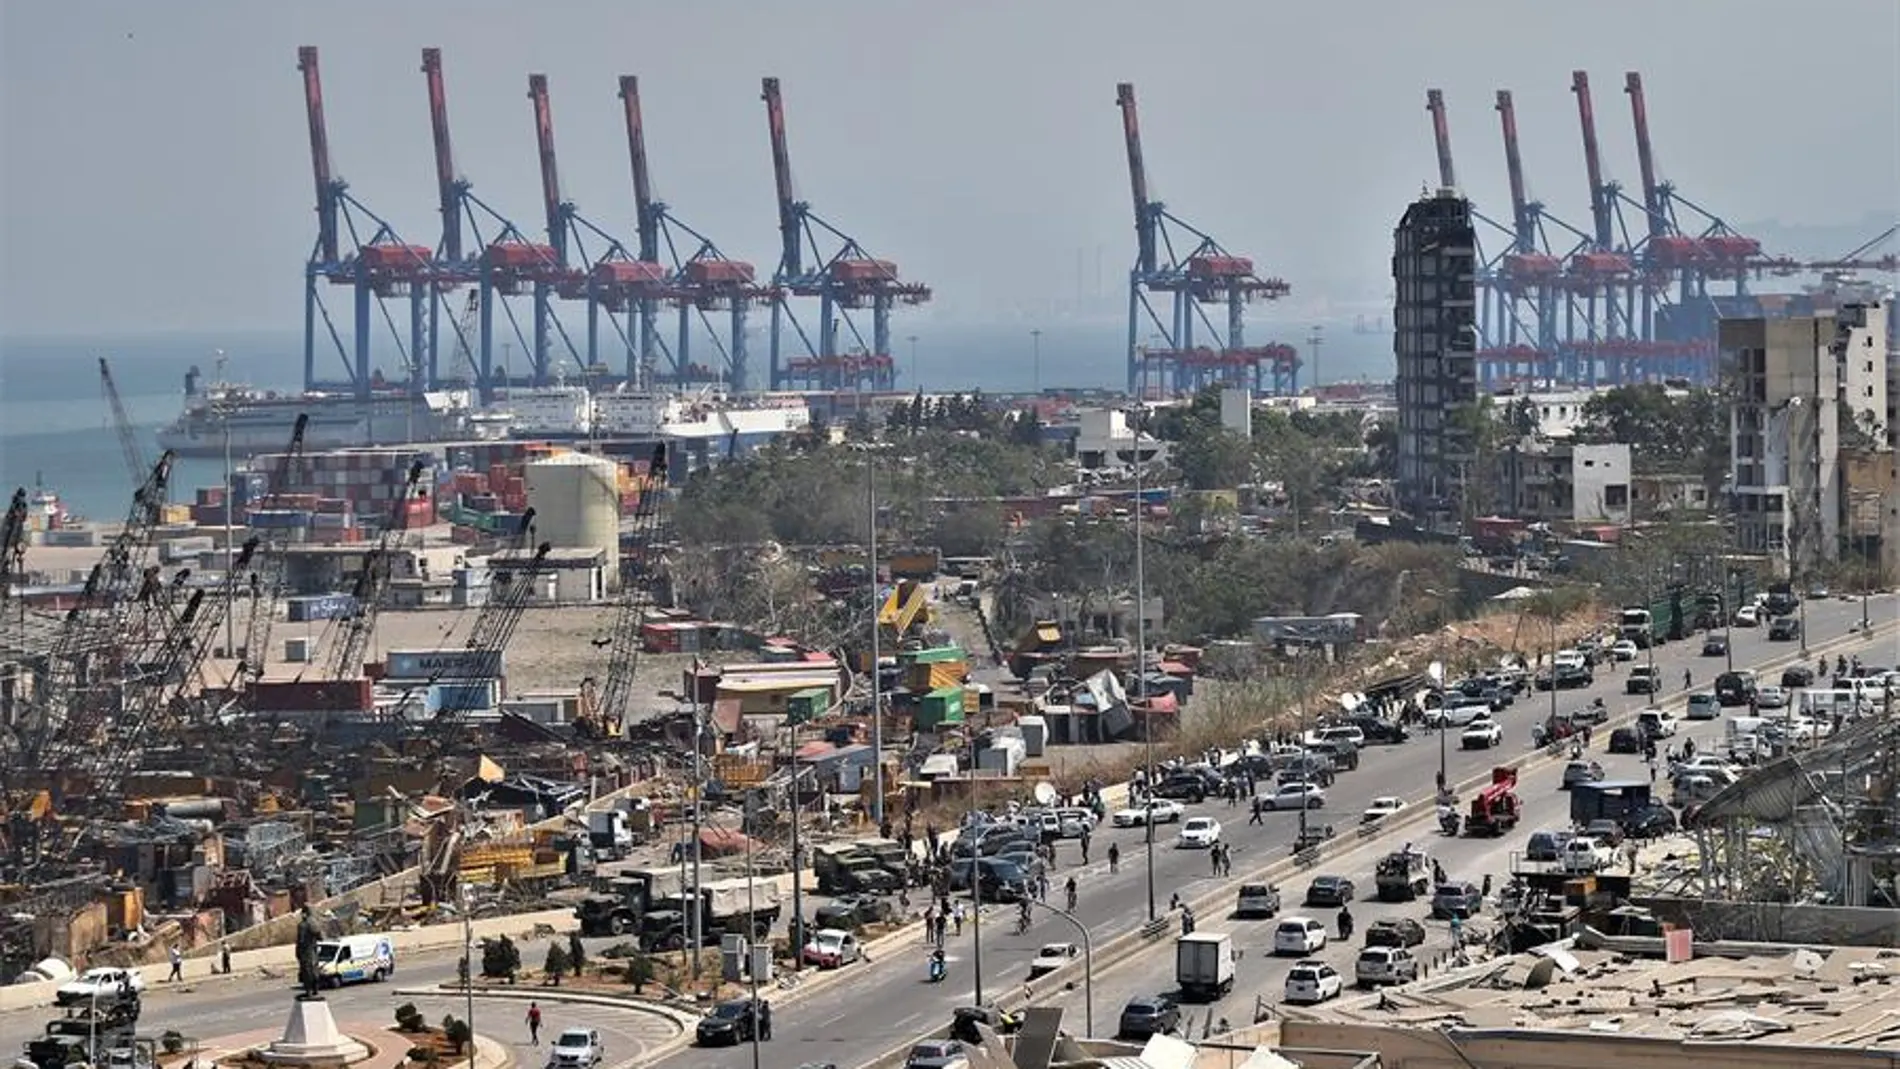 Vista general del puerto de Beirut.